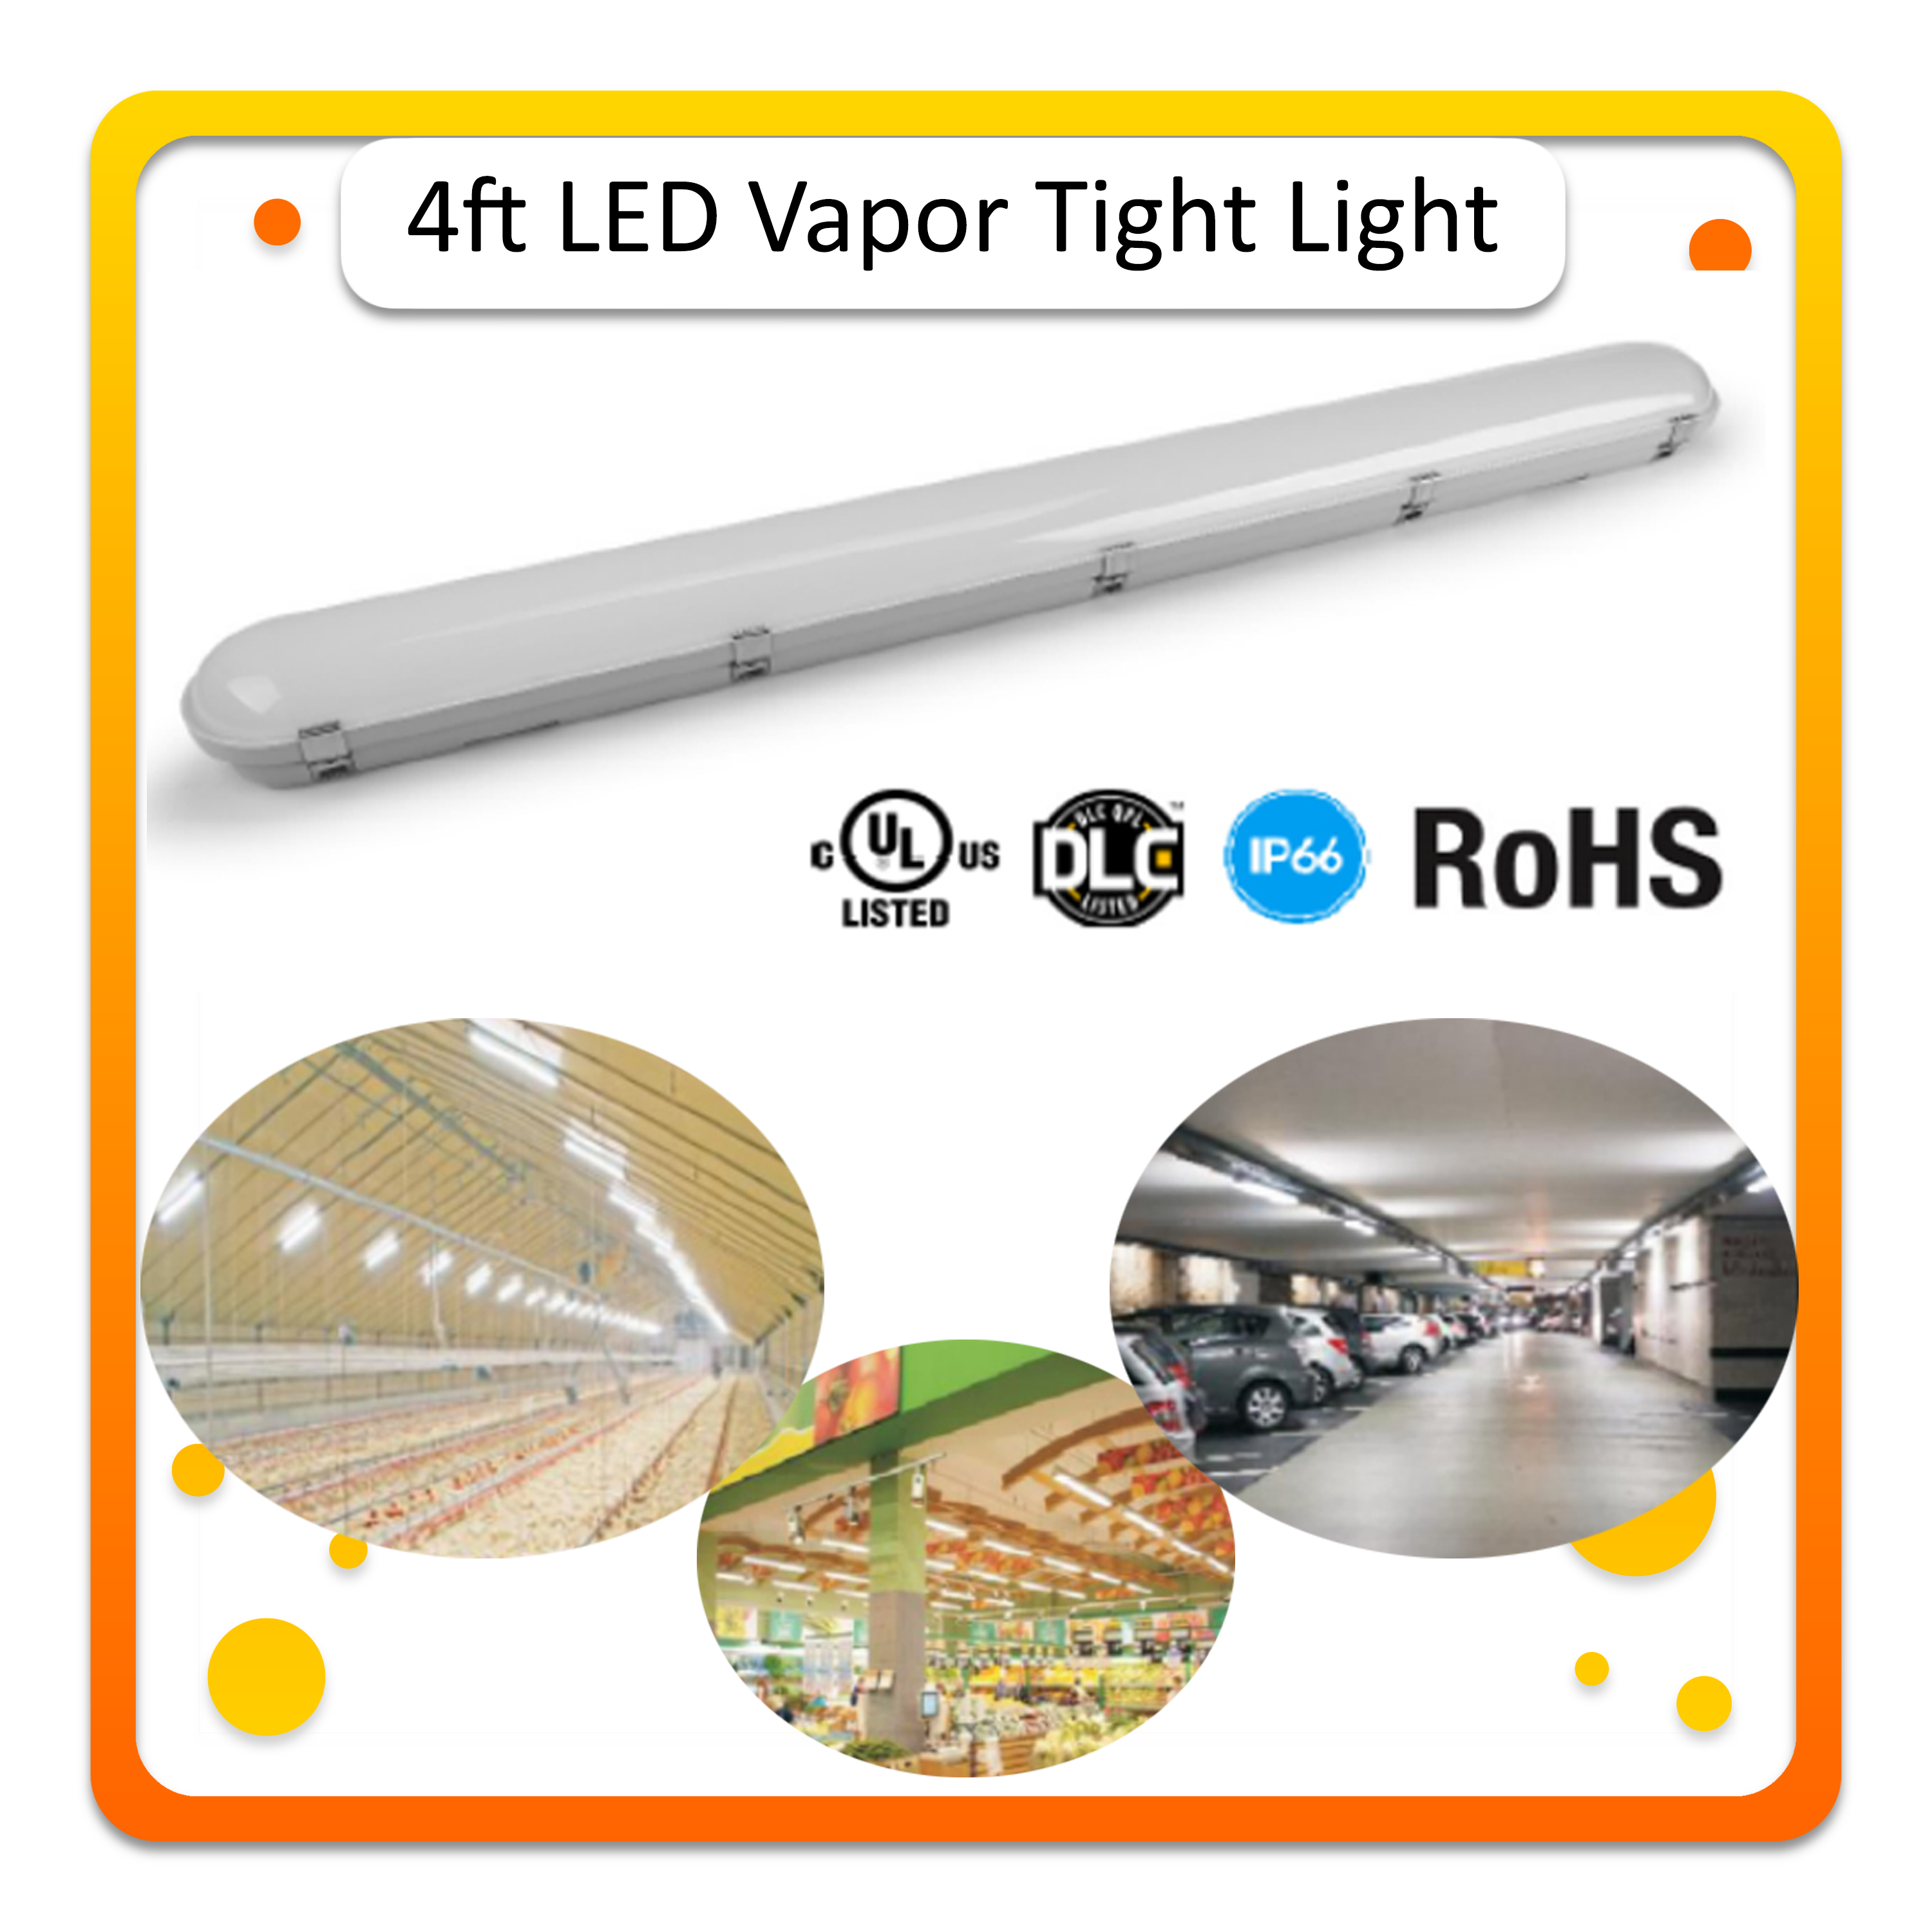 LED Vapor Tight Light.png